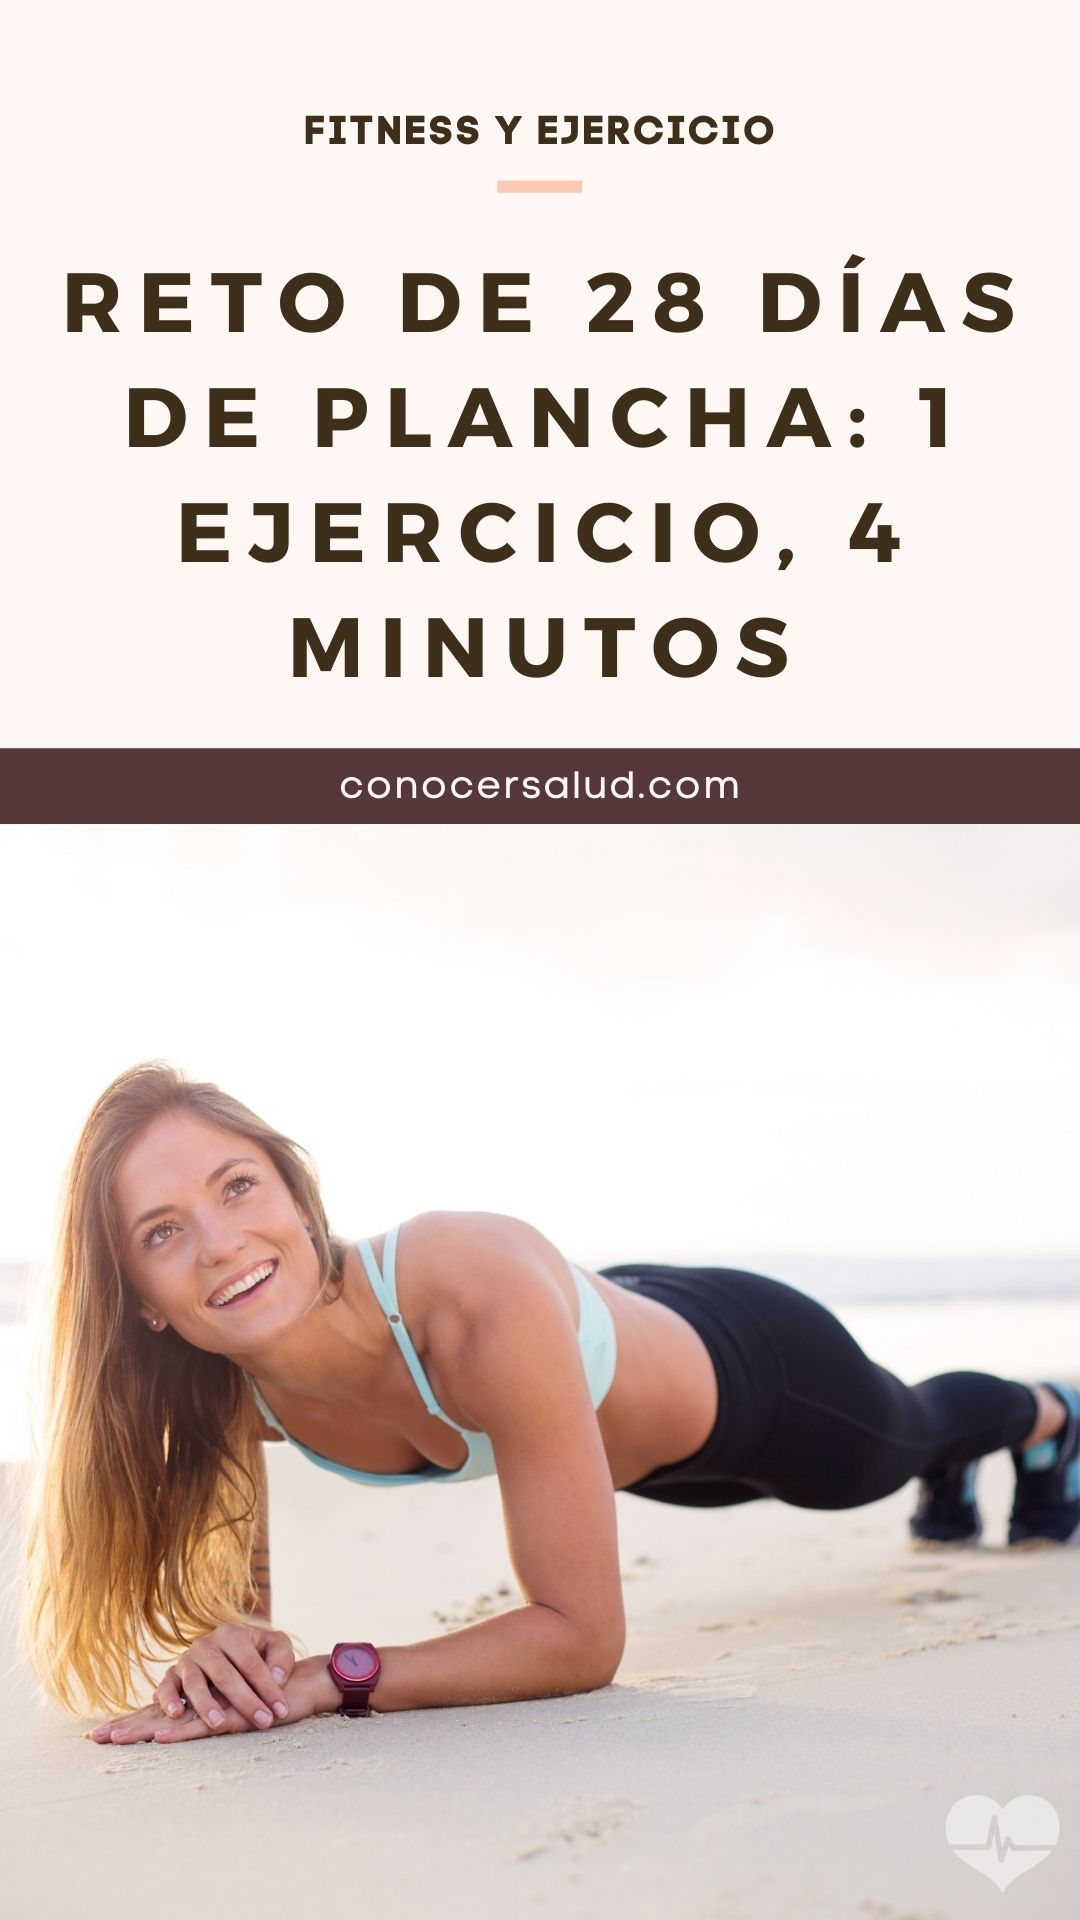 Reto de plancha de 28 días: 1 ejercicio, 4 minutos